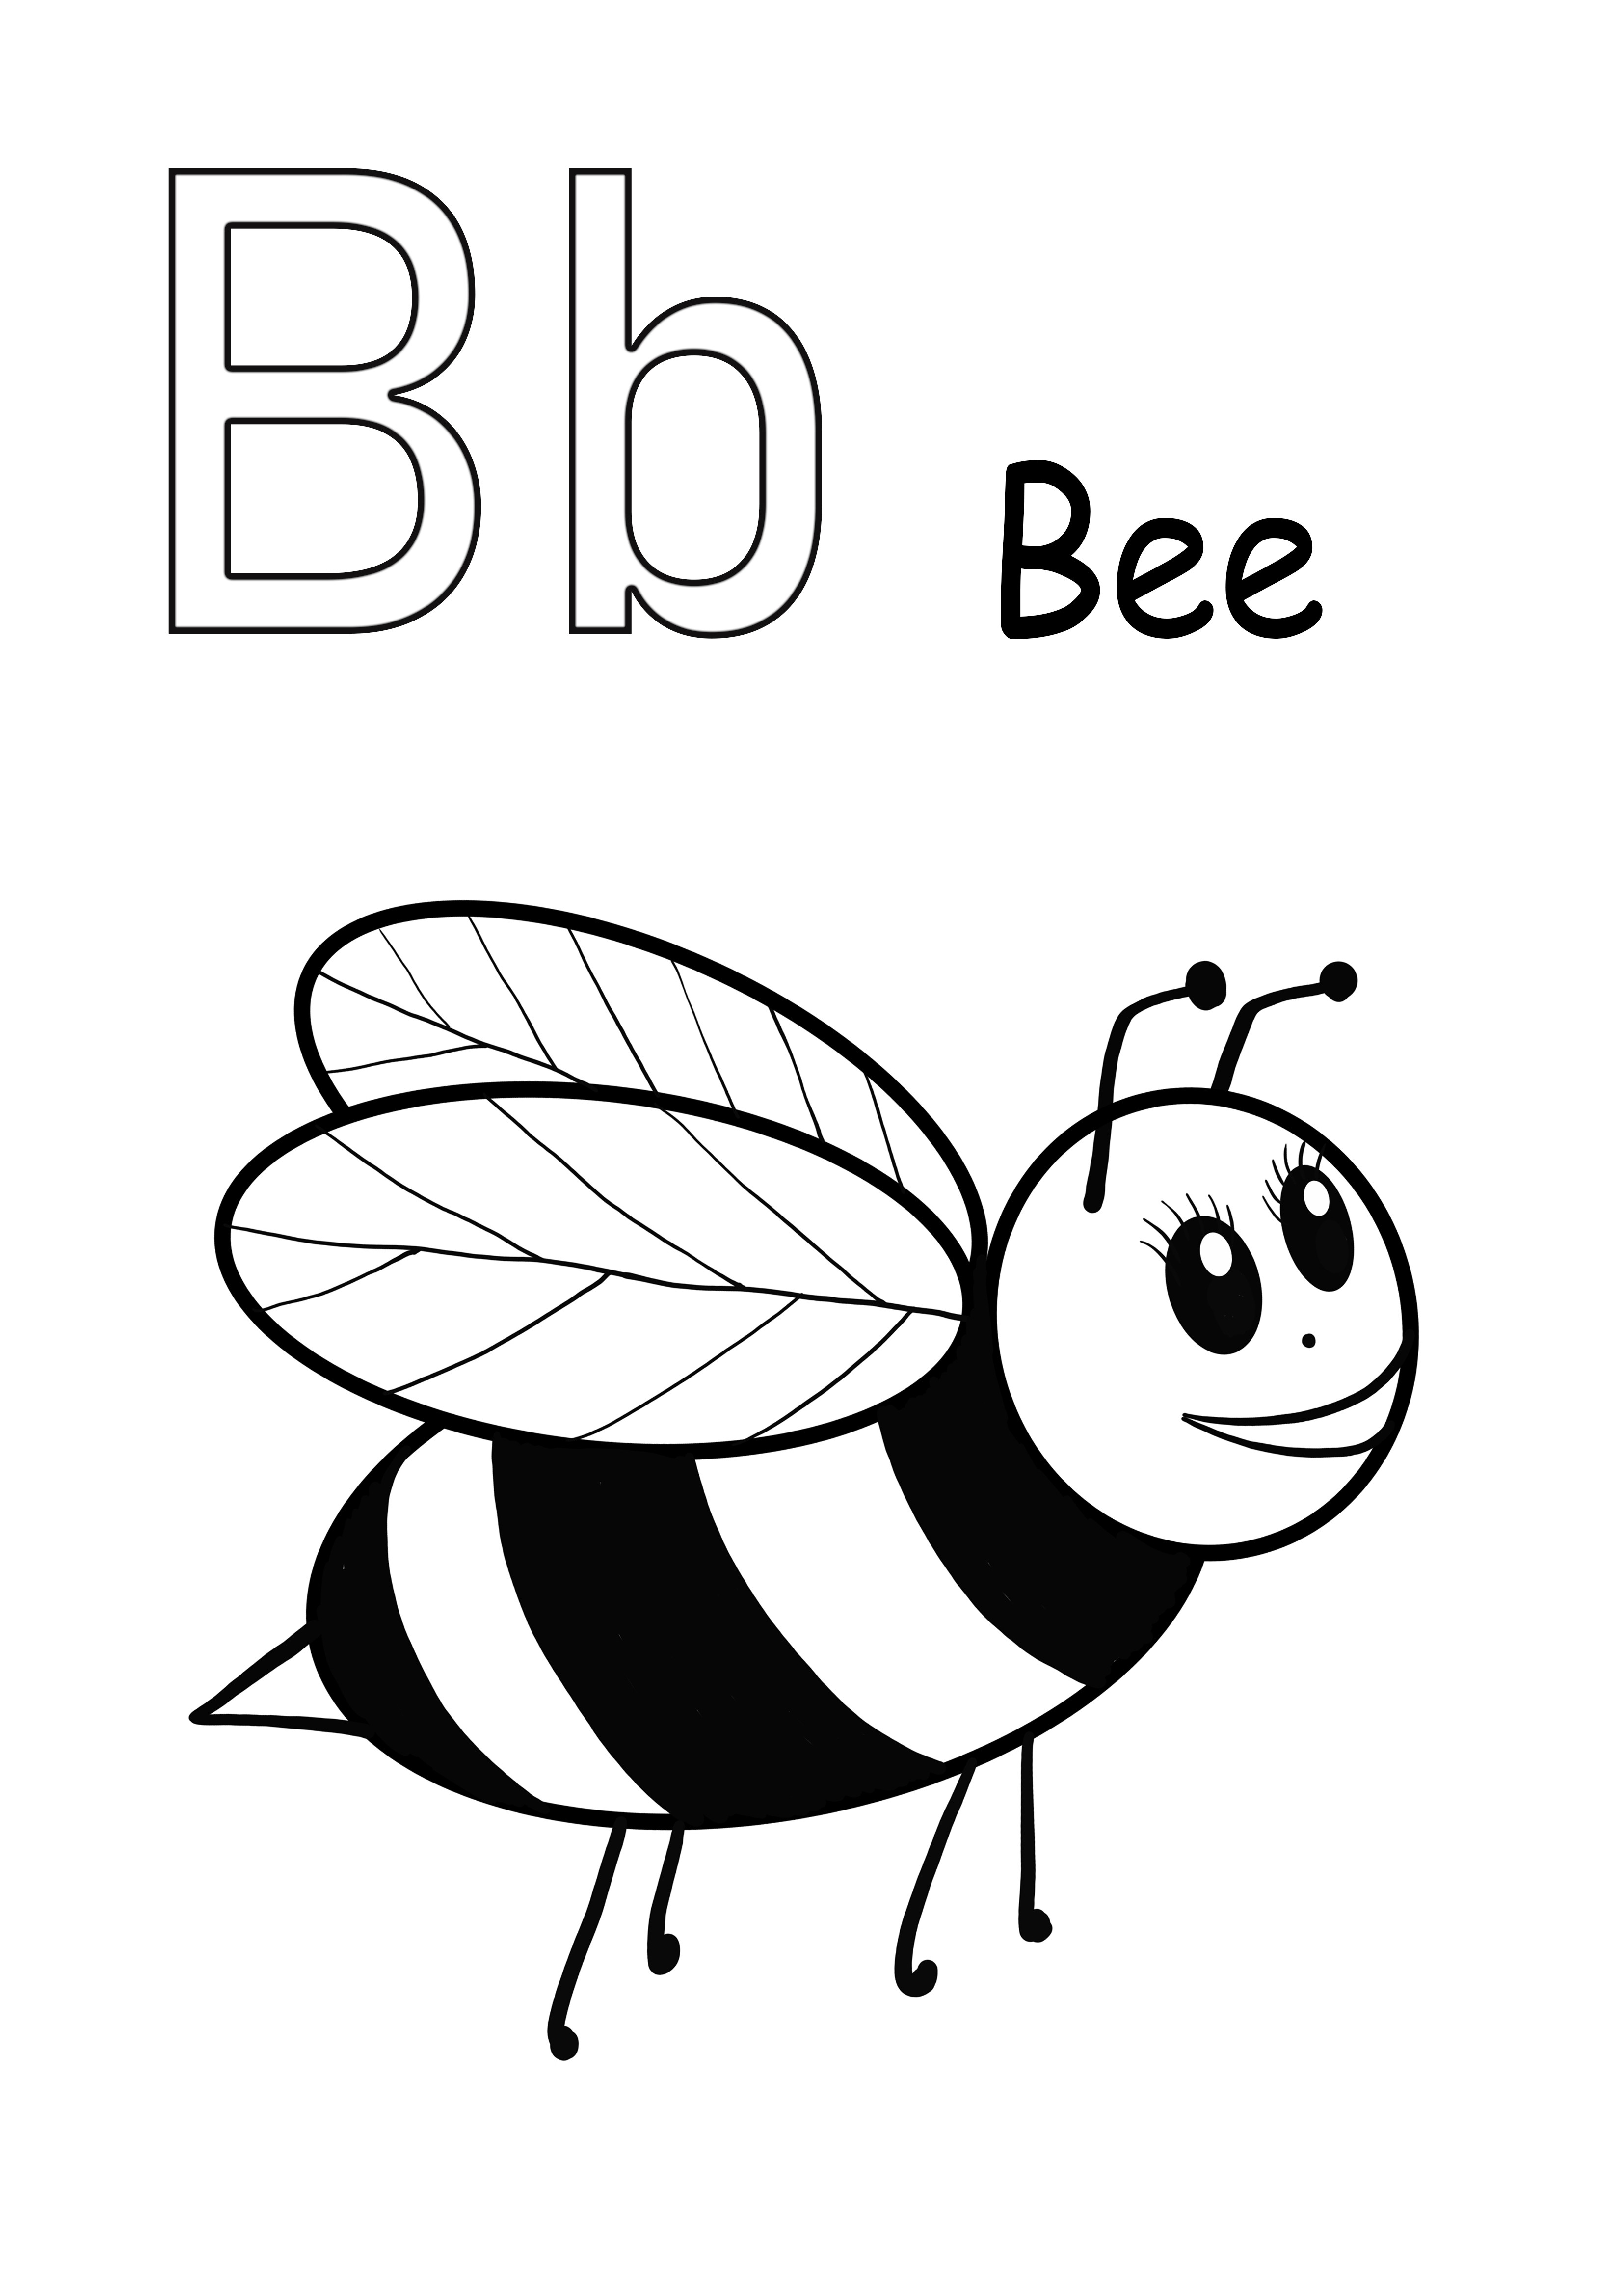 Litera B oznacza kolorowanie pszczół i bezpłatne pobieranie obrazu